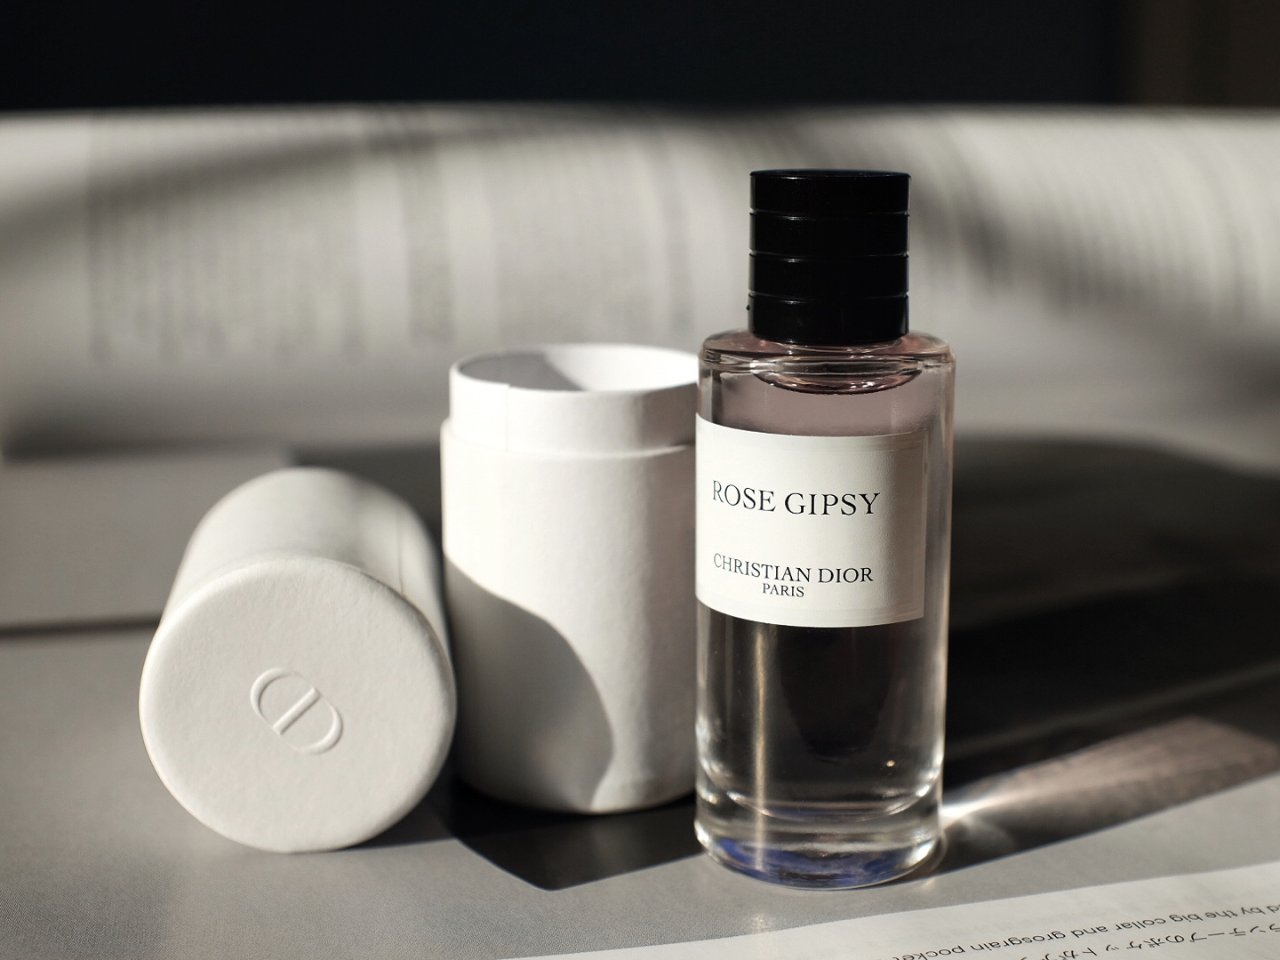 Dior典藏系列香水Q香之Rose Gipsy | 晒晒圈彩妆精选